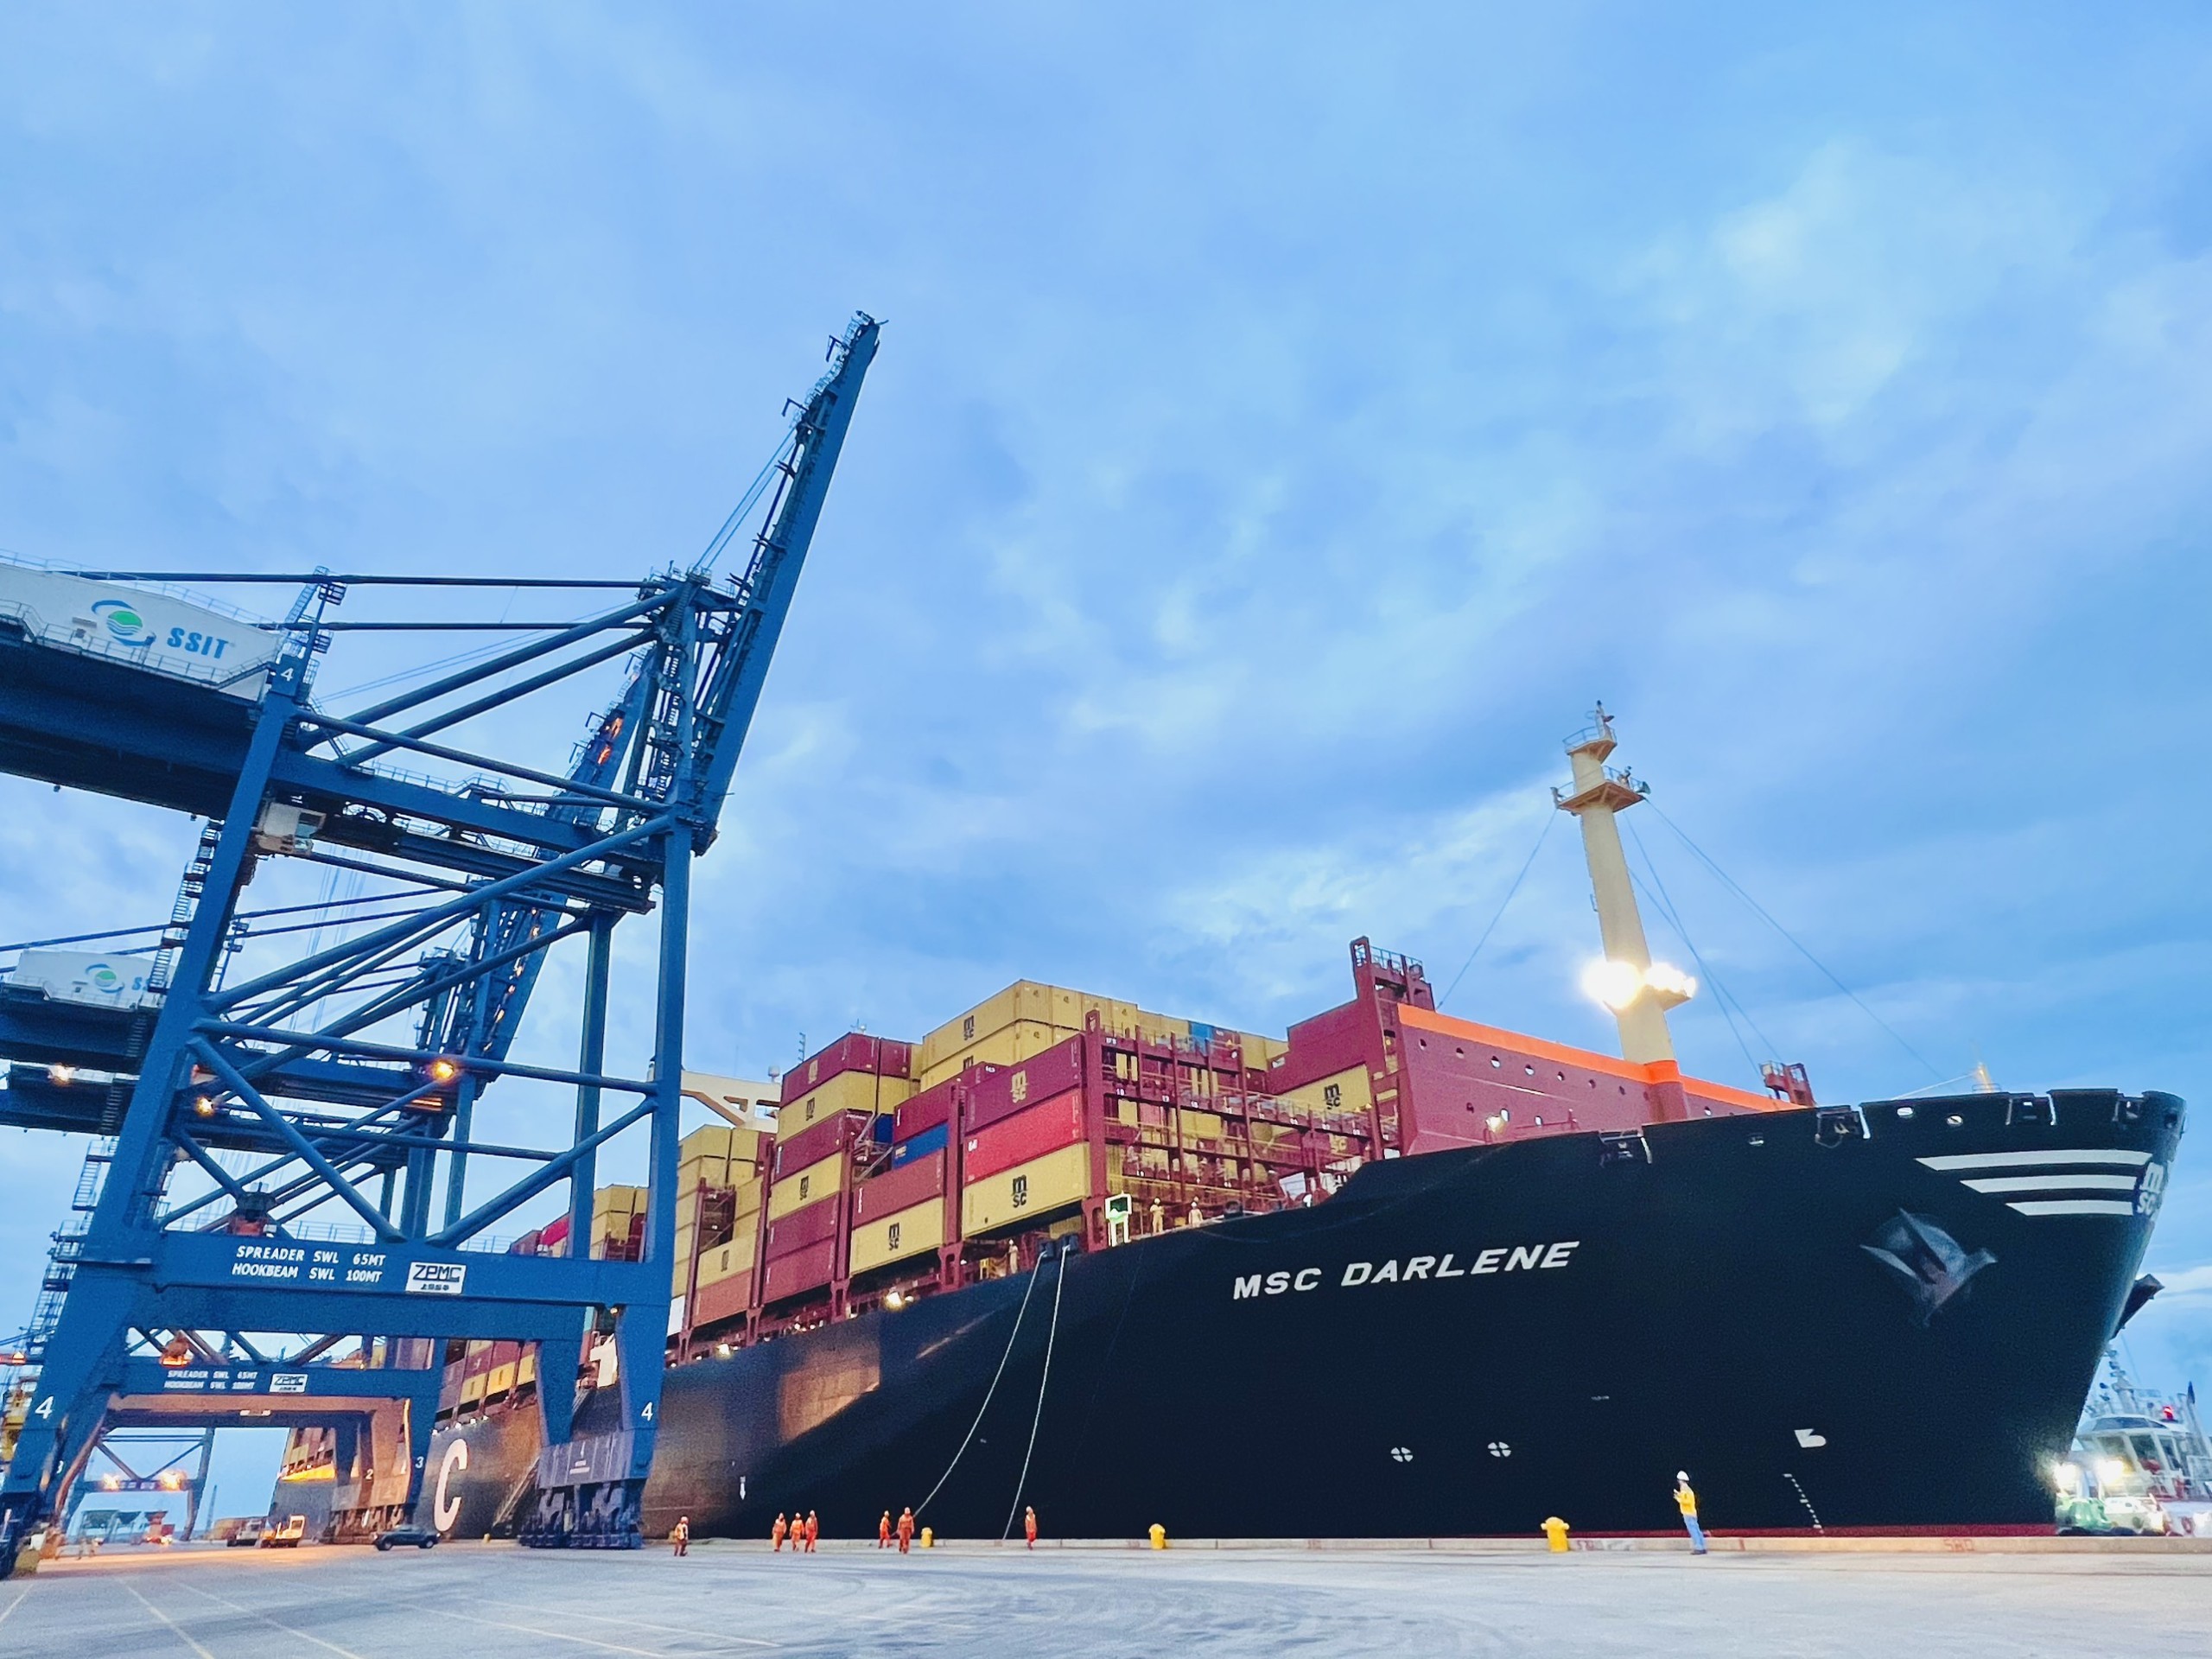 Tàu MSC DARLENE có trọng tải toàn phần 175.897 tấn, chiều dài 366m, sức chở 15.413 TEU cập cảng SSIT.